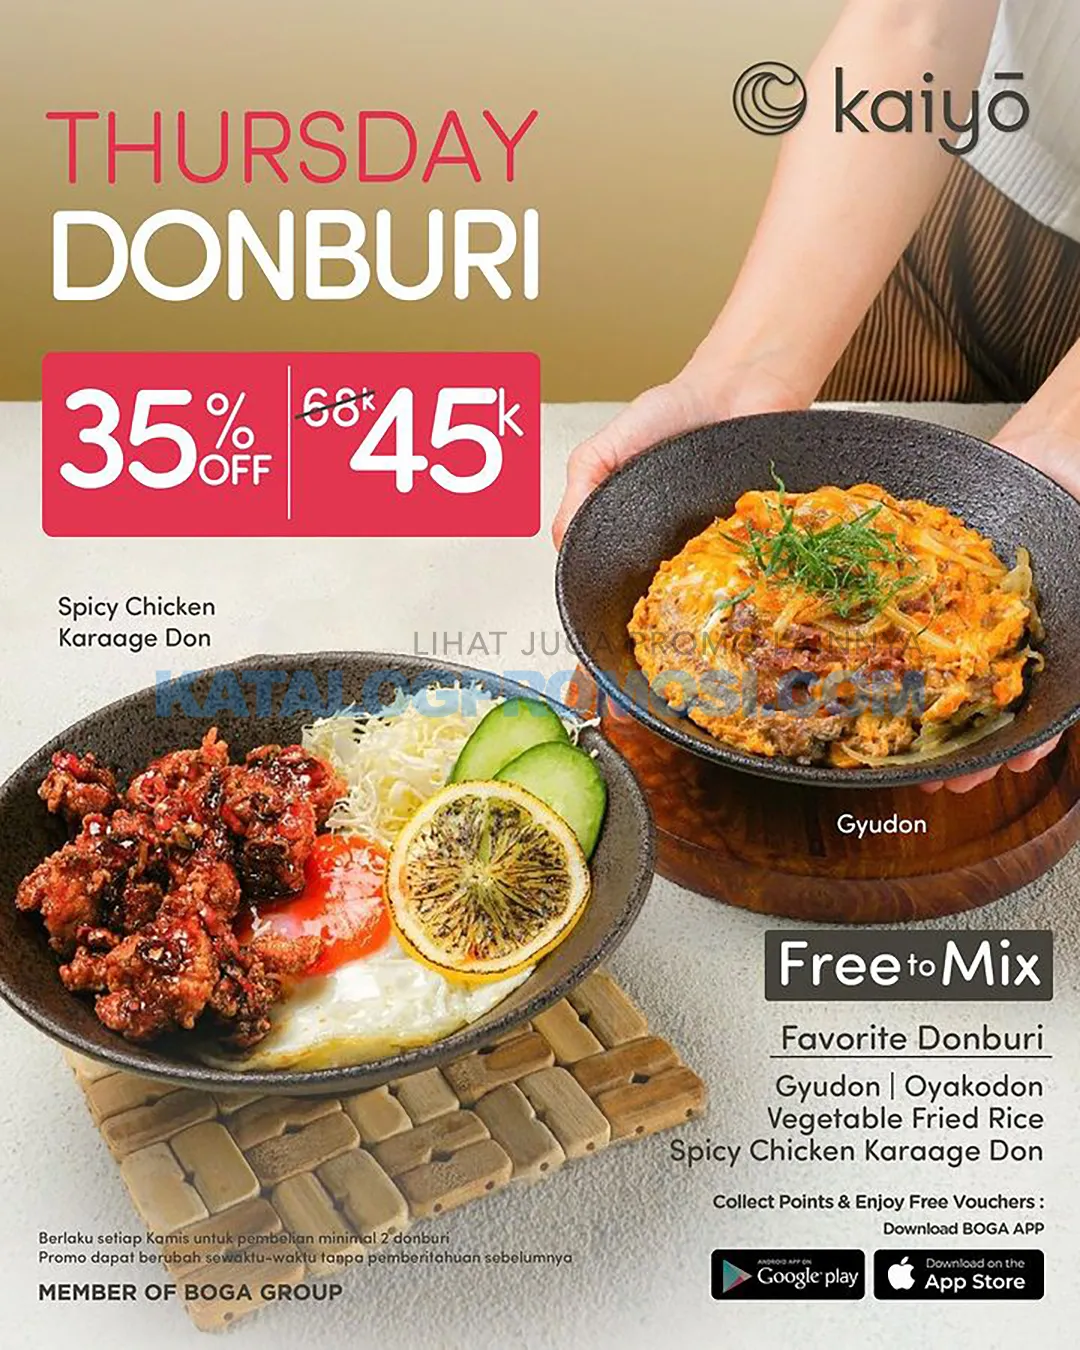 PROMO KAIYO THURSDAY DONBURI - Best Seller Donburi only 45K